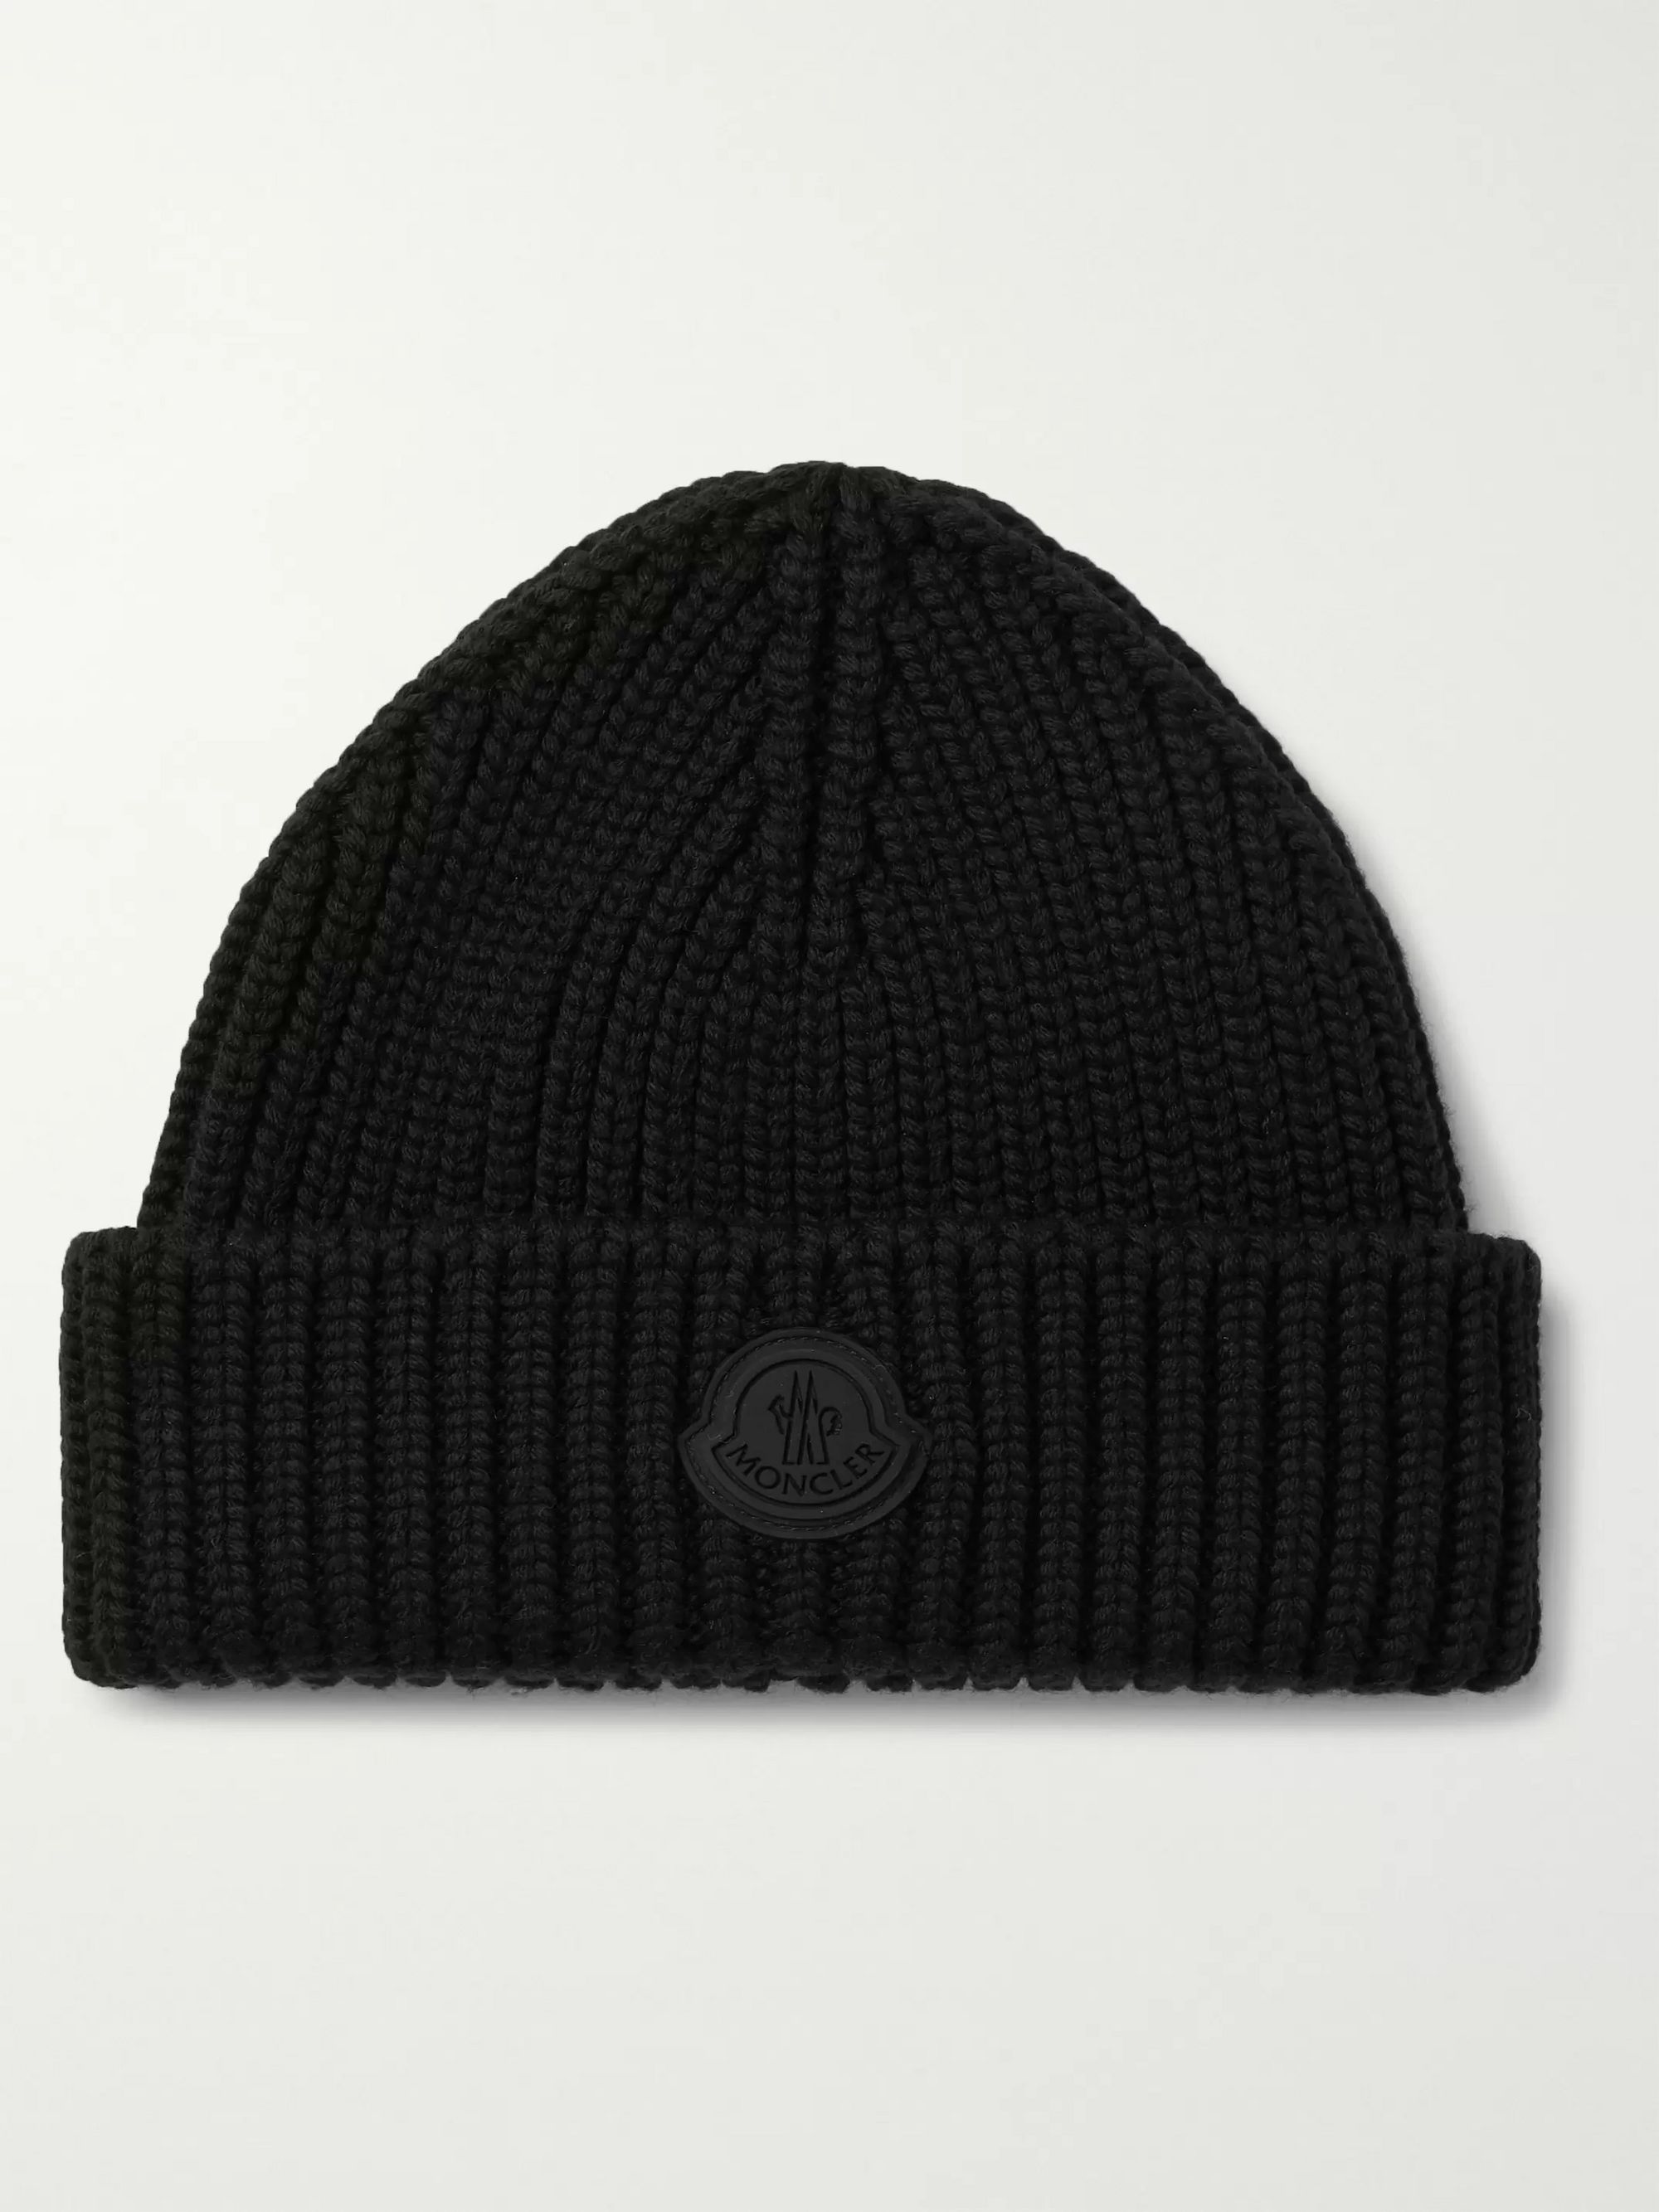 moncler wool hat